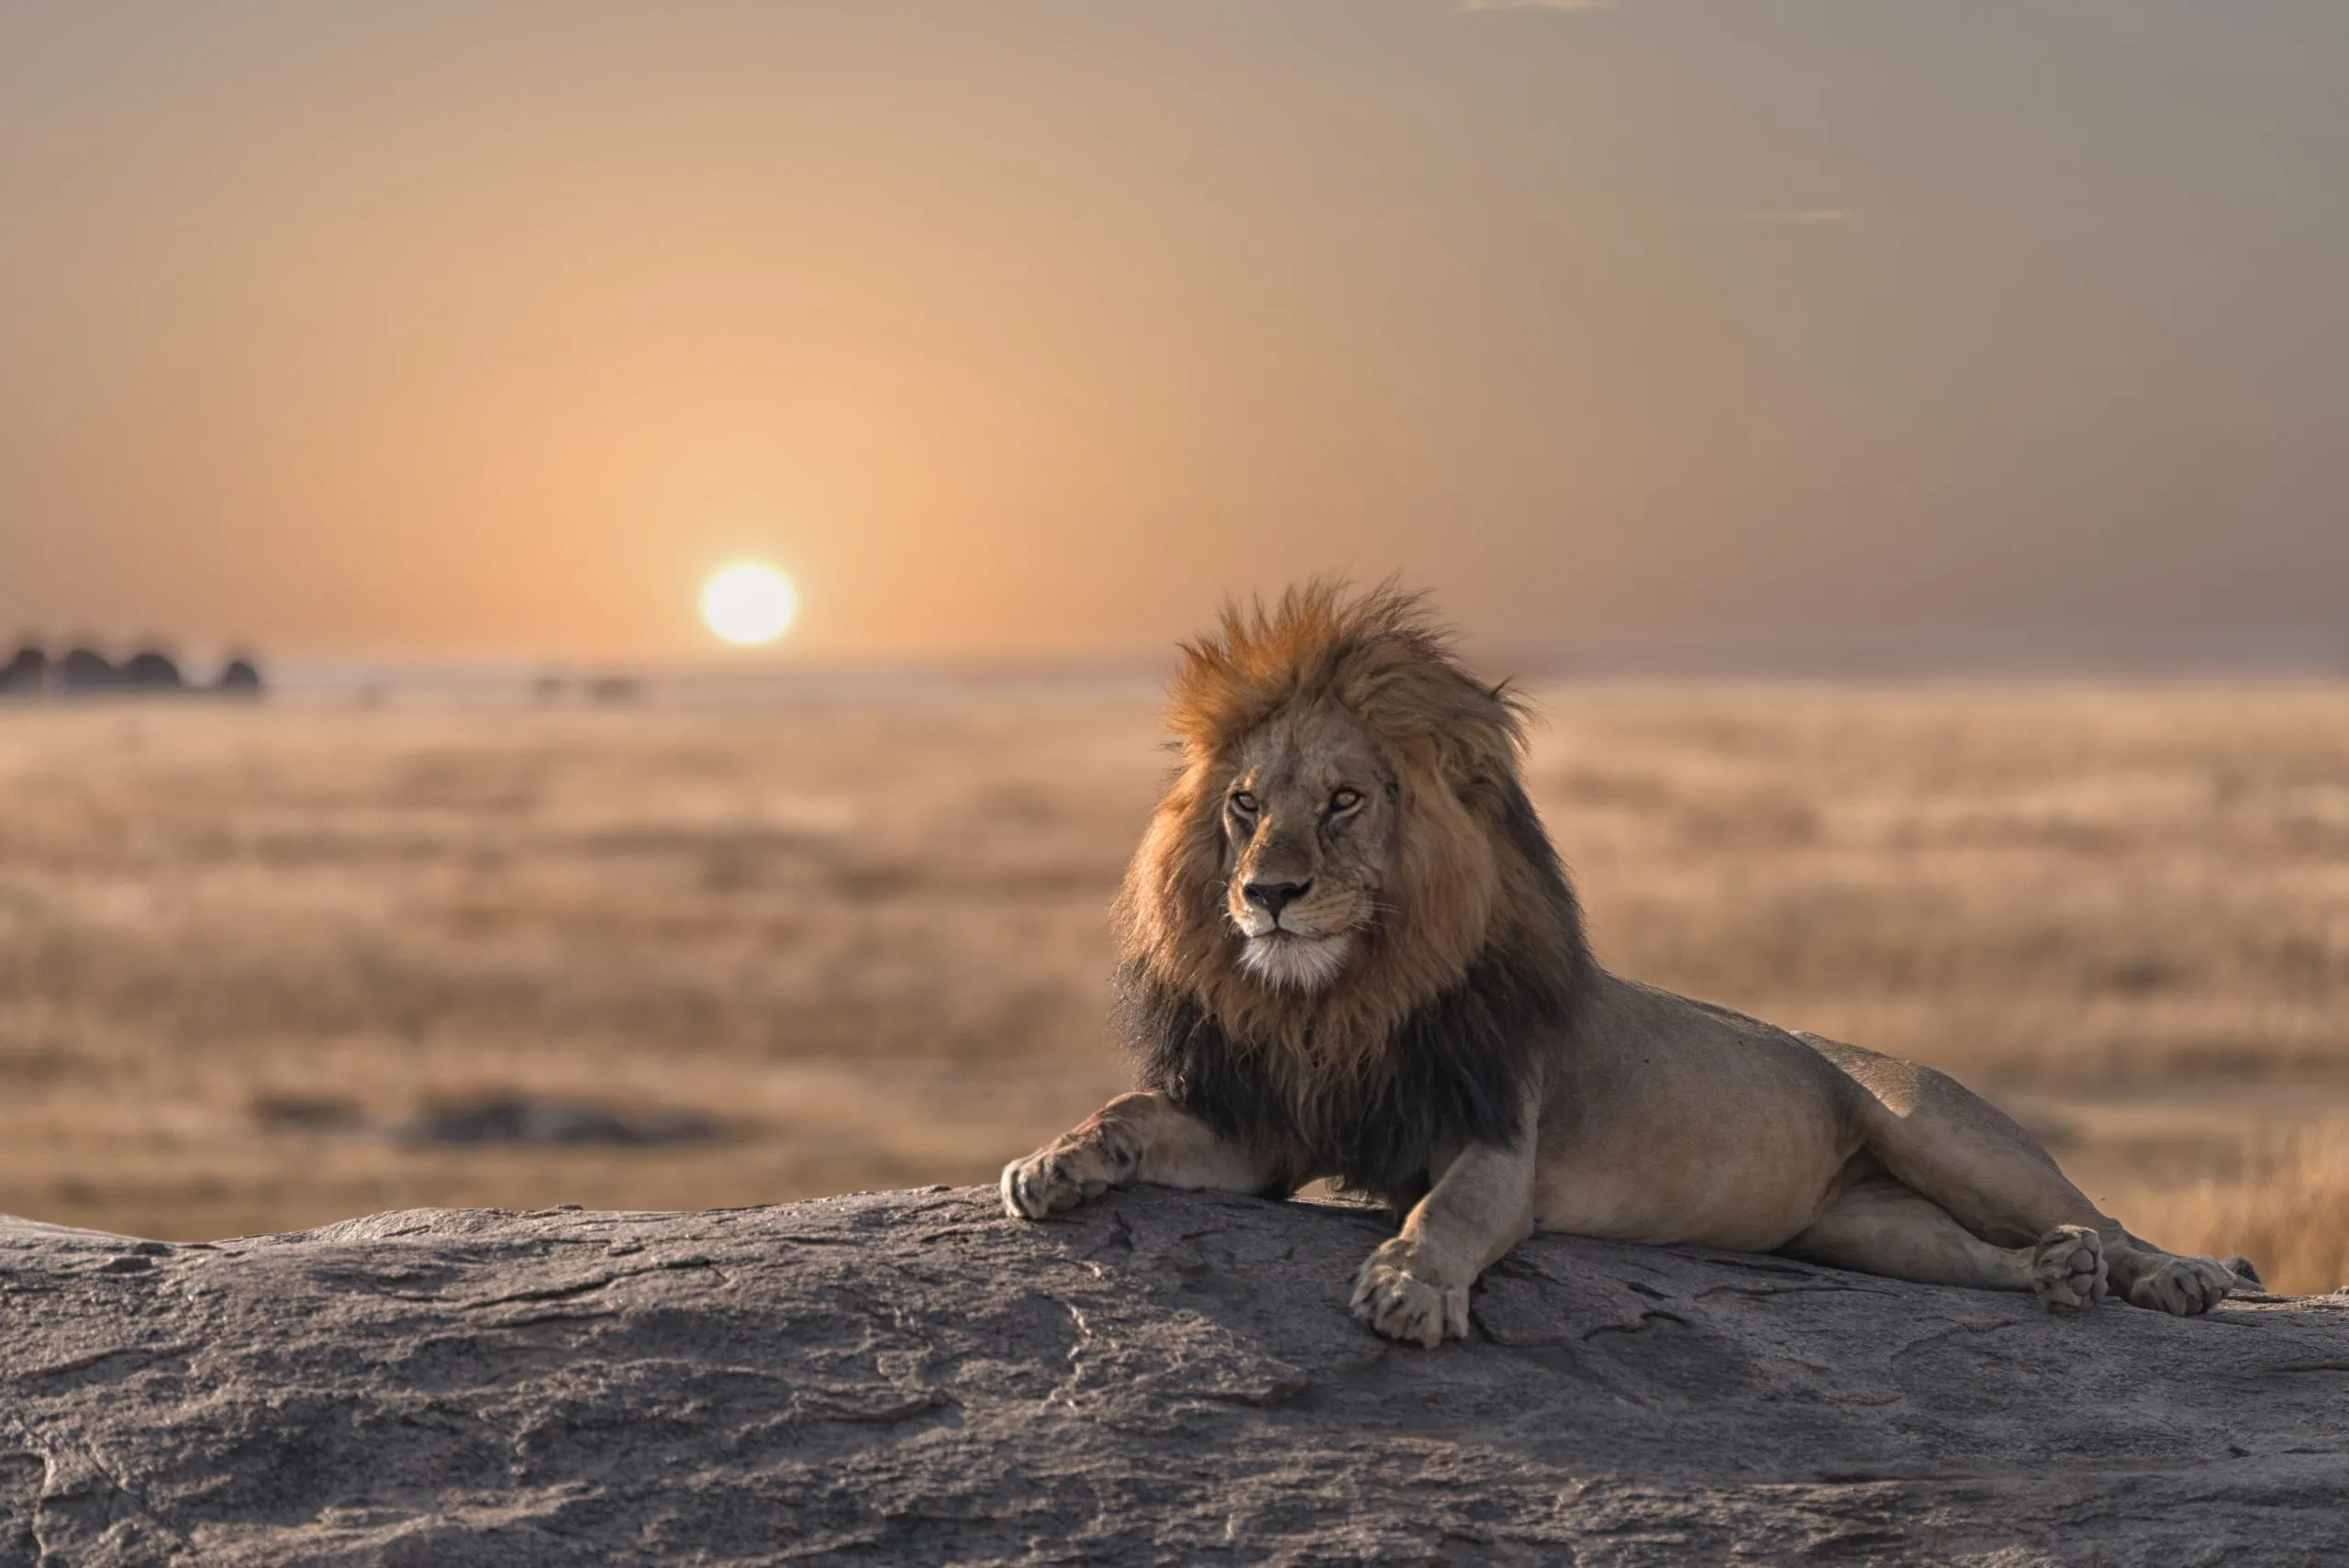 Un lion mâle est assis au sommet du rocher, à la recherche de son territoire. Il est magnifique.